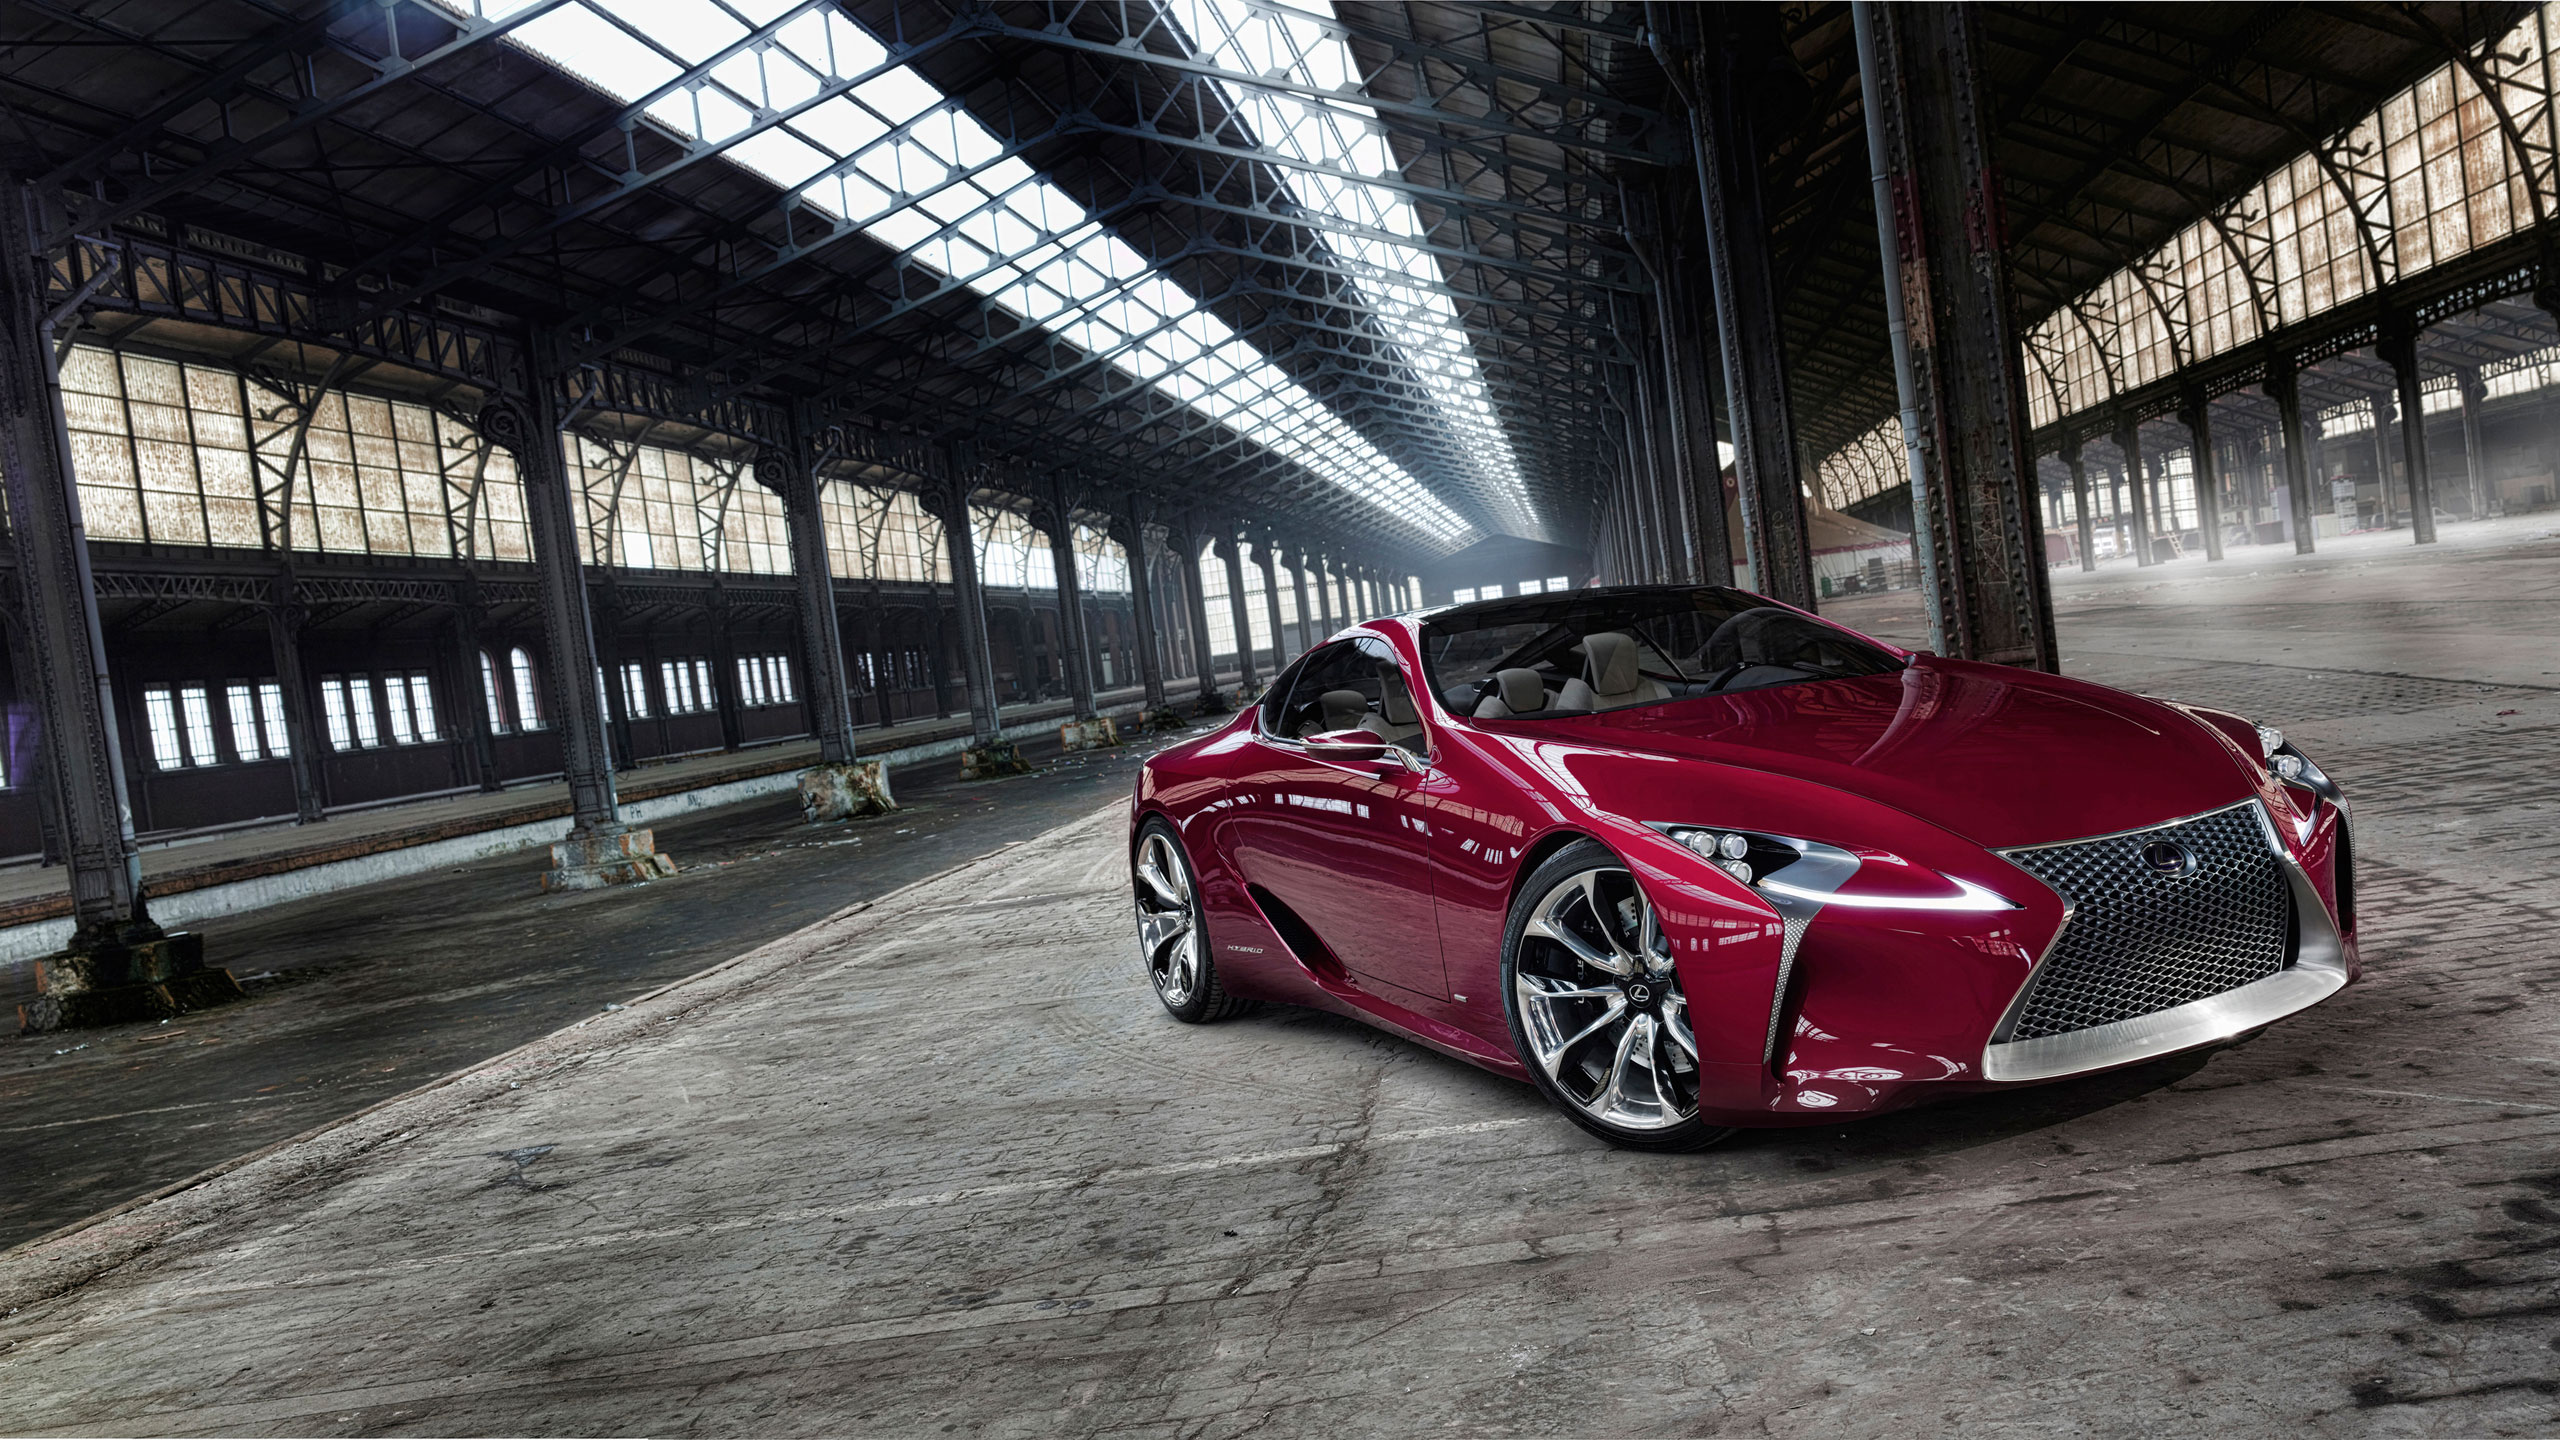 Lexus Lf Lc - Lexus Lc 500 Concept Car , HD Wallpaper & Backgrounds